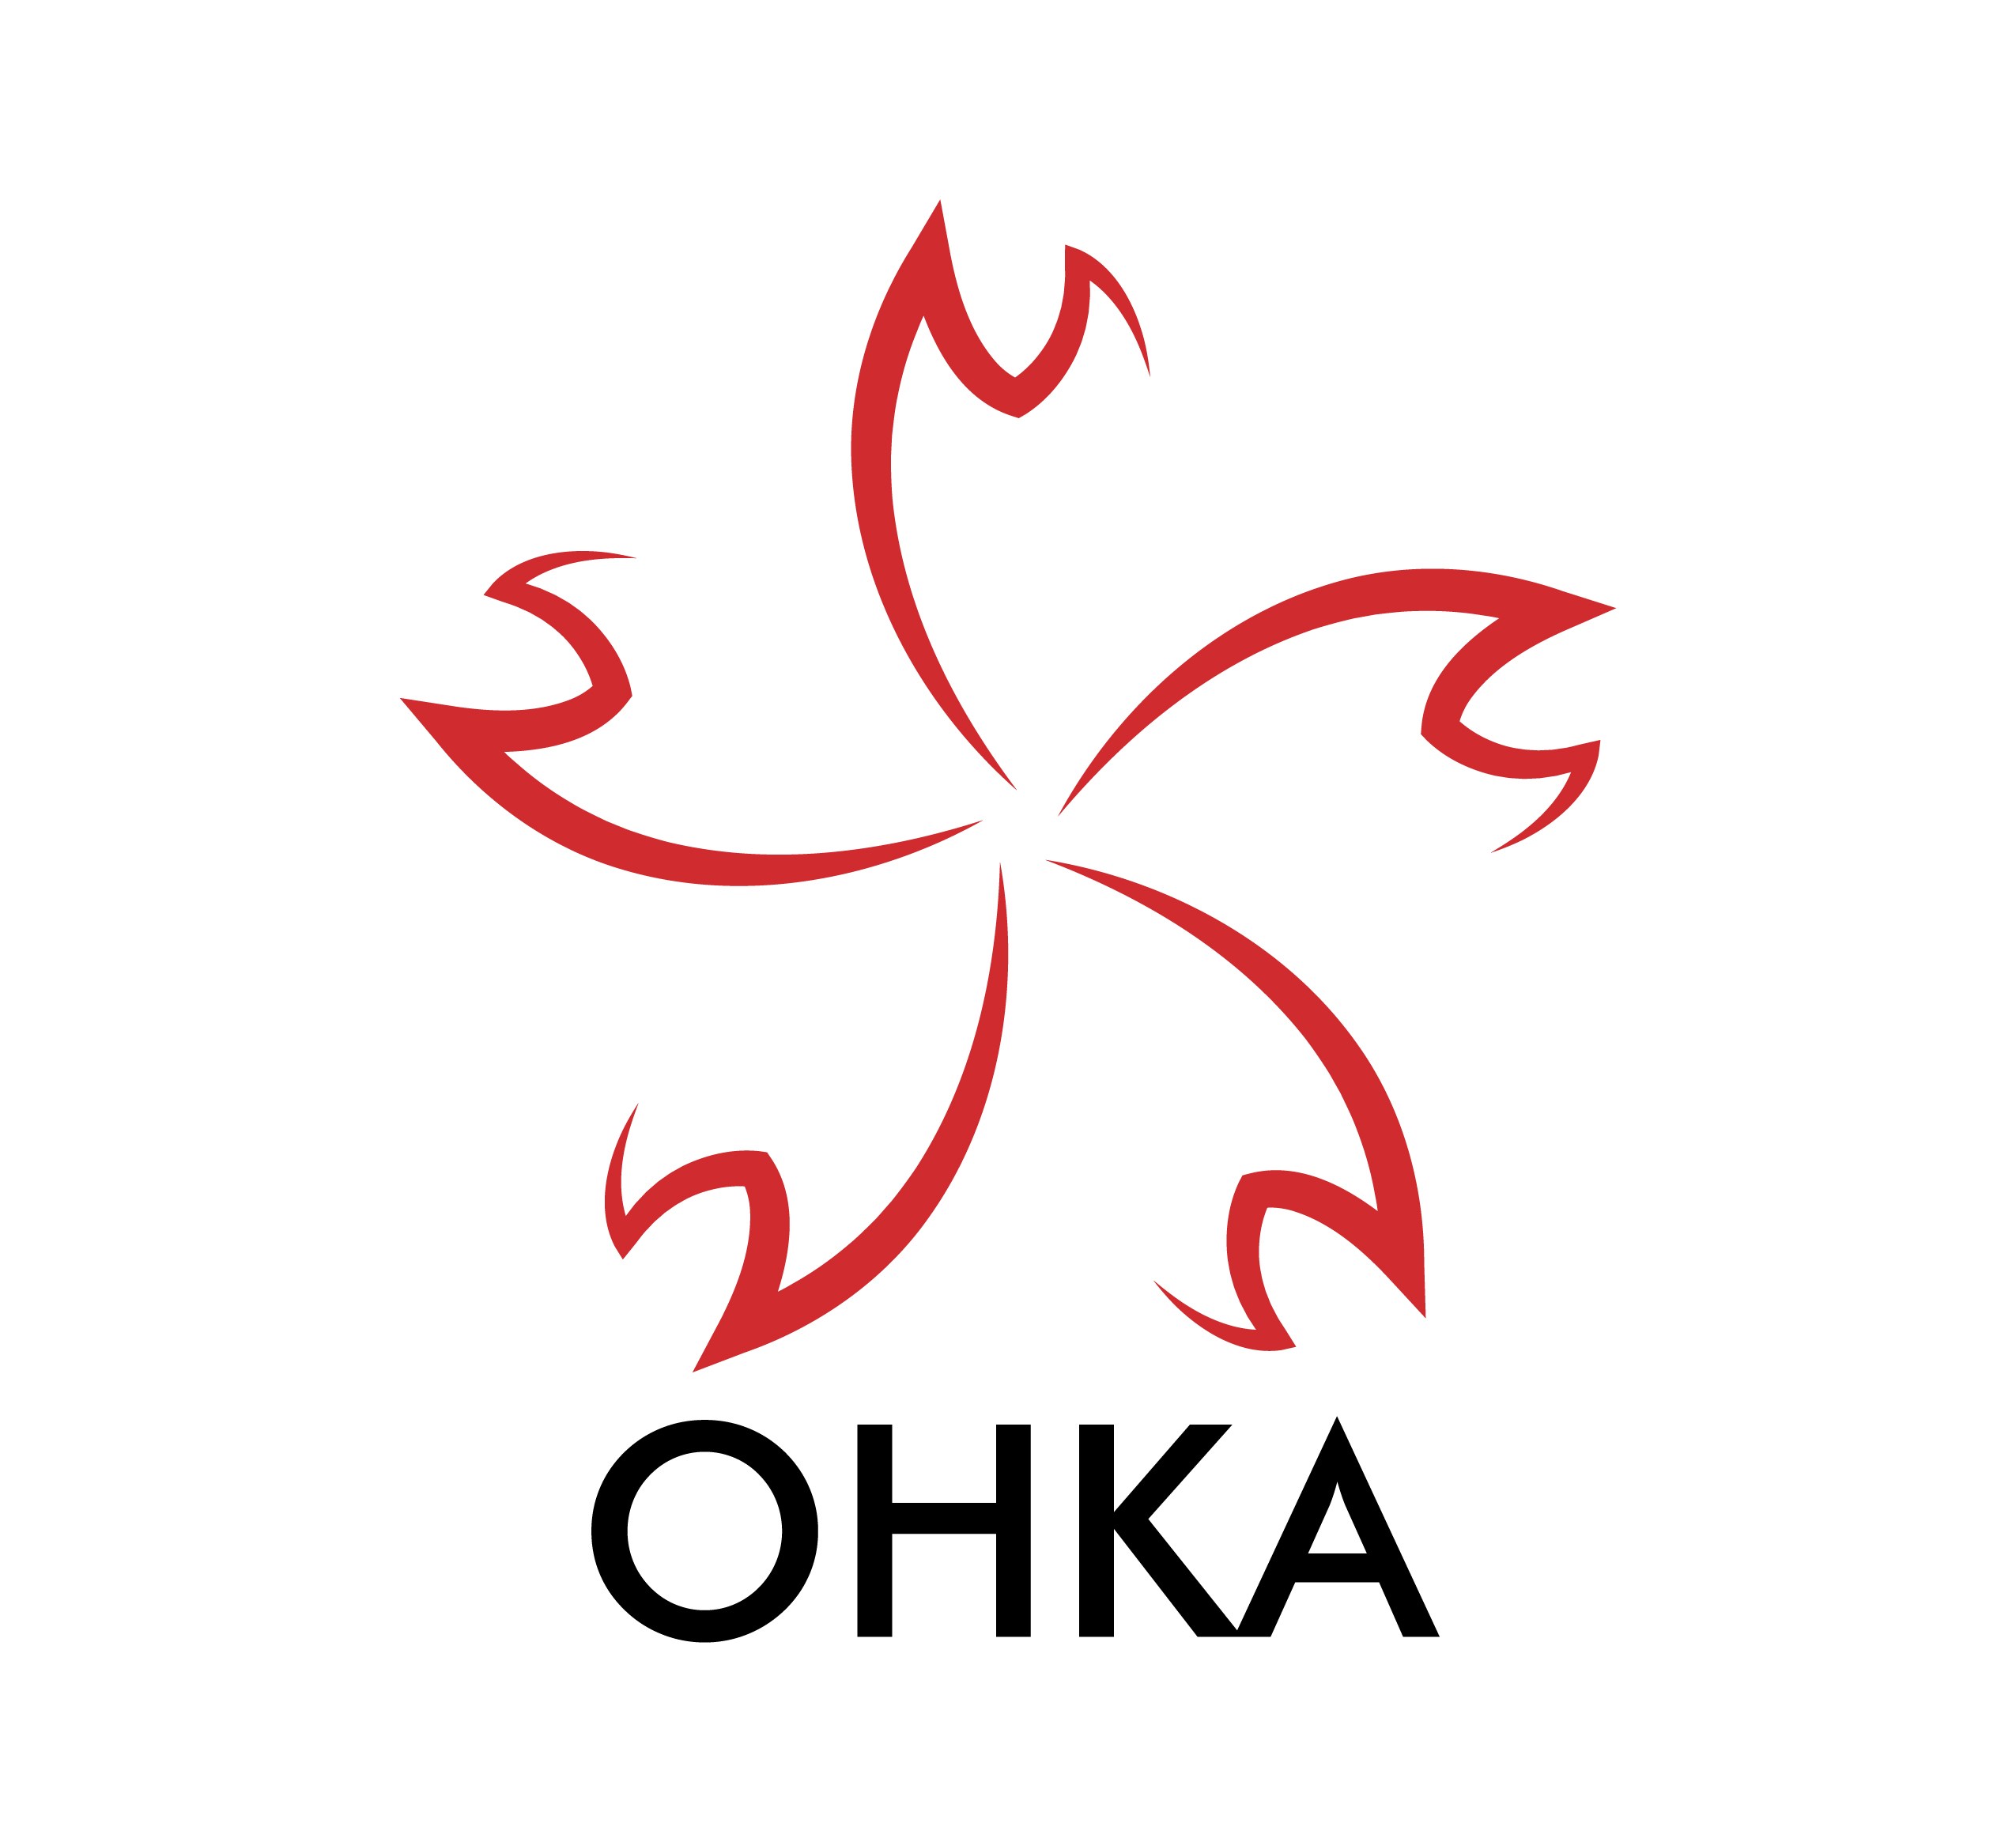 OHKA logo